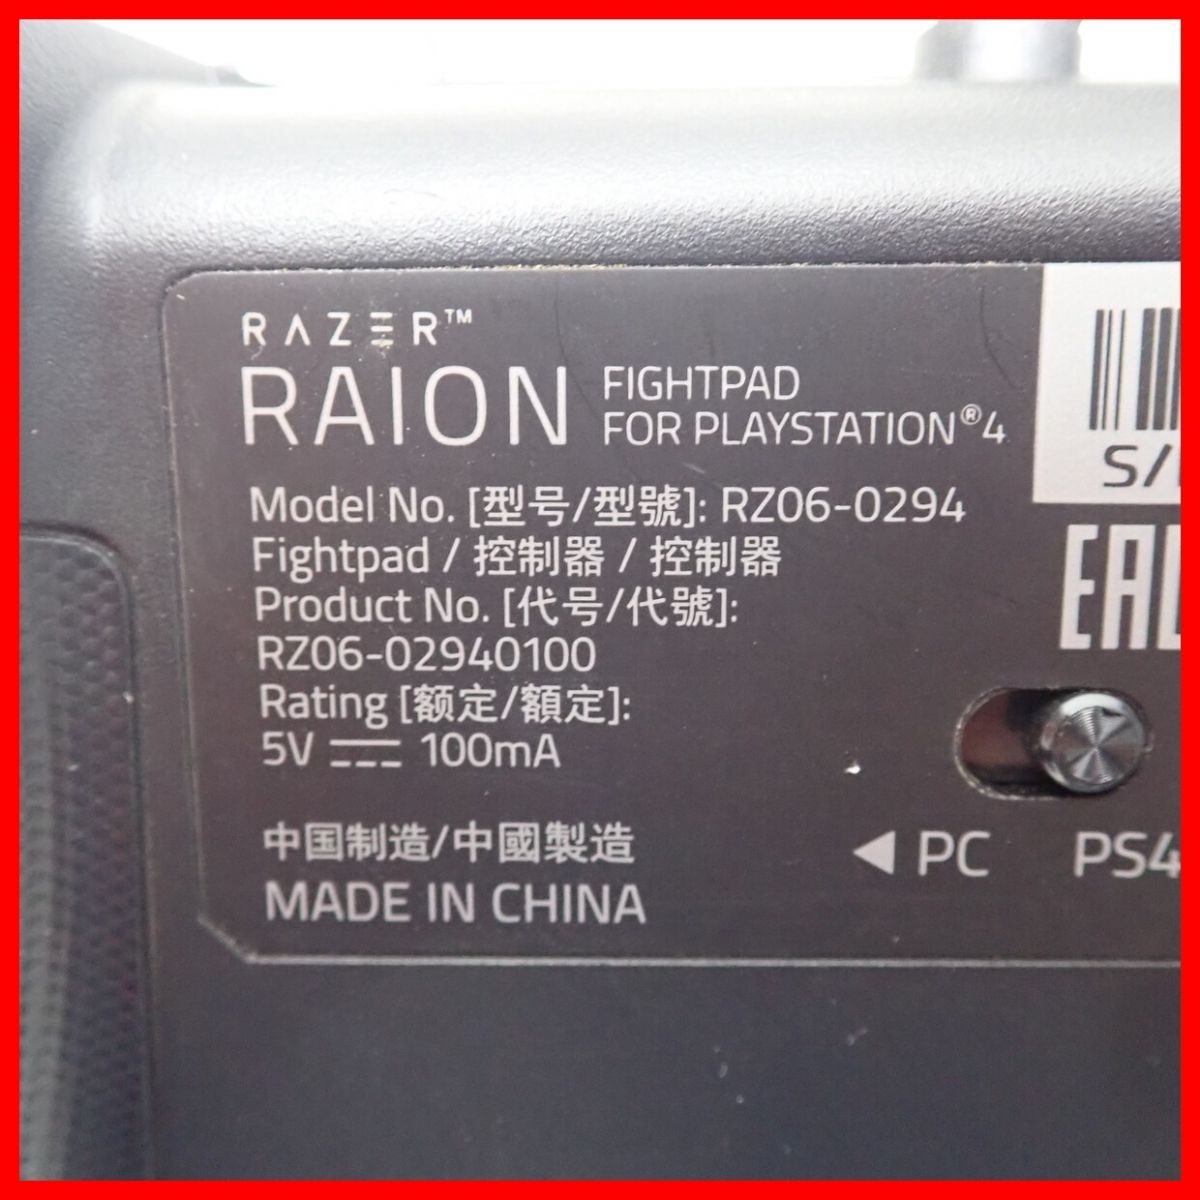 PS4/PC プレステ4/パソコン RAZER ワイヤード コントローラー RAION FIGHTPAD RZ06-0294 レイザー